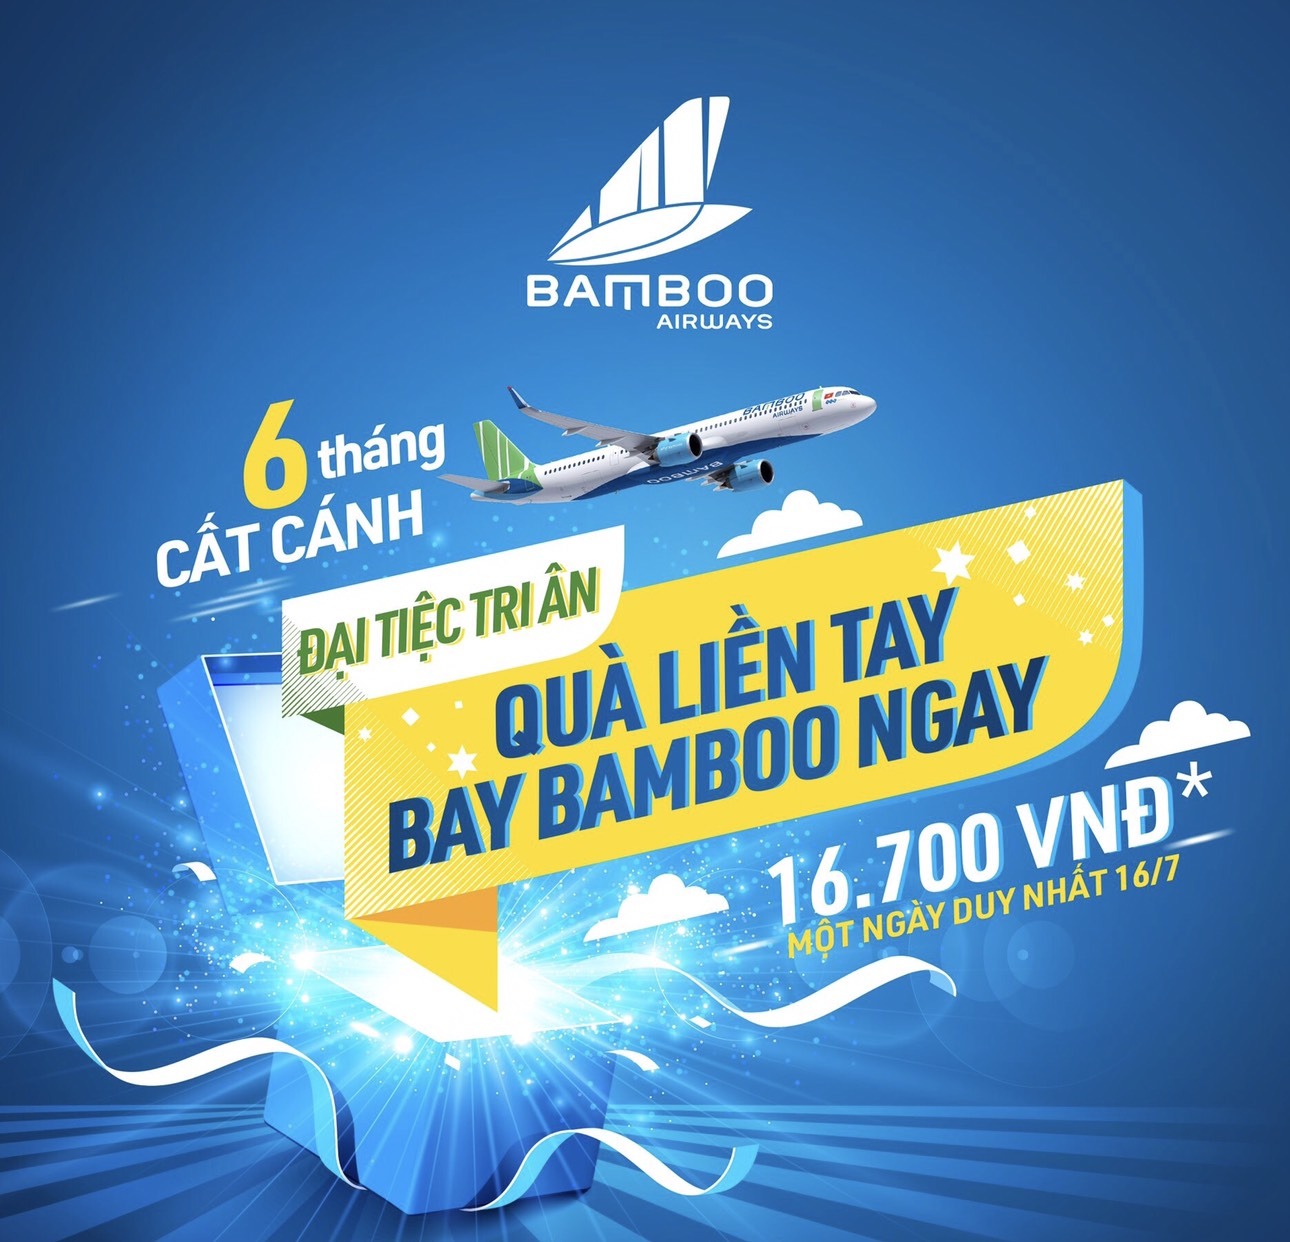 bb16700 - Đại tiệc tri ân: Quà liền tay, bay BAMBOO ngay!